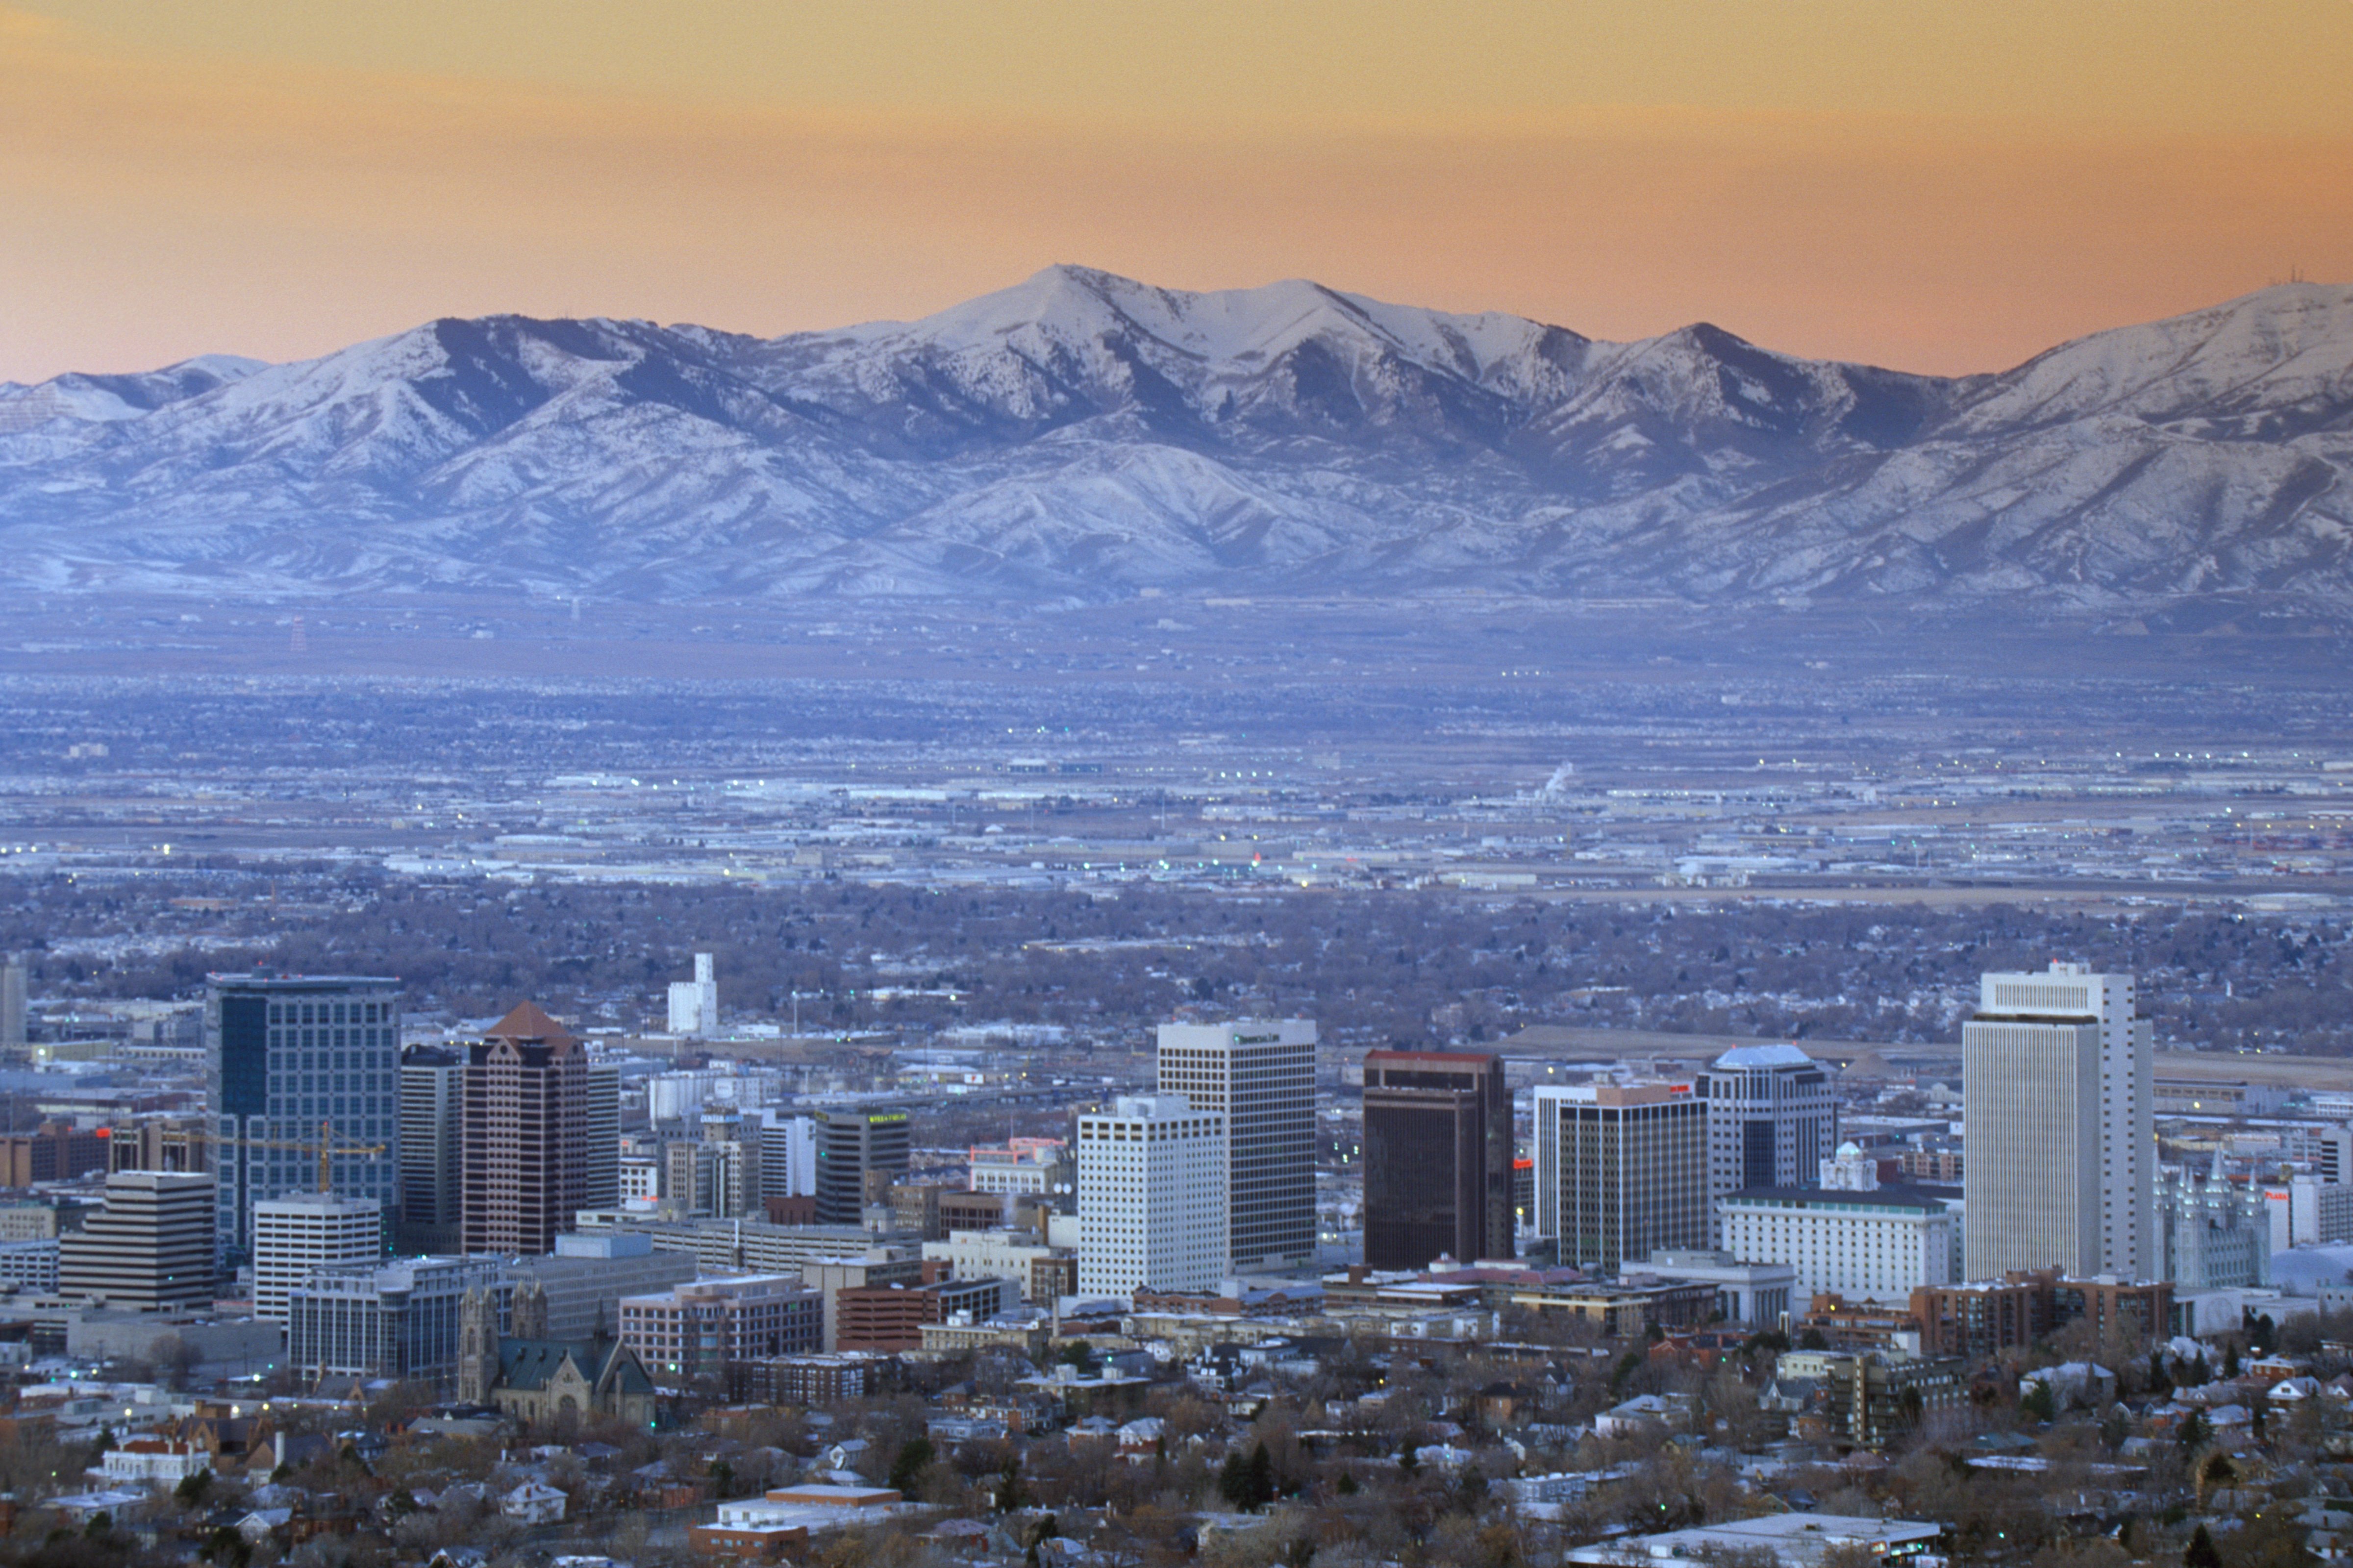 Skyline of Salt Lake City, UT (Getty Images)